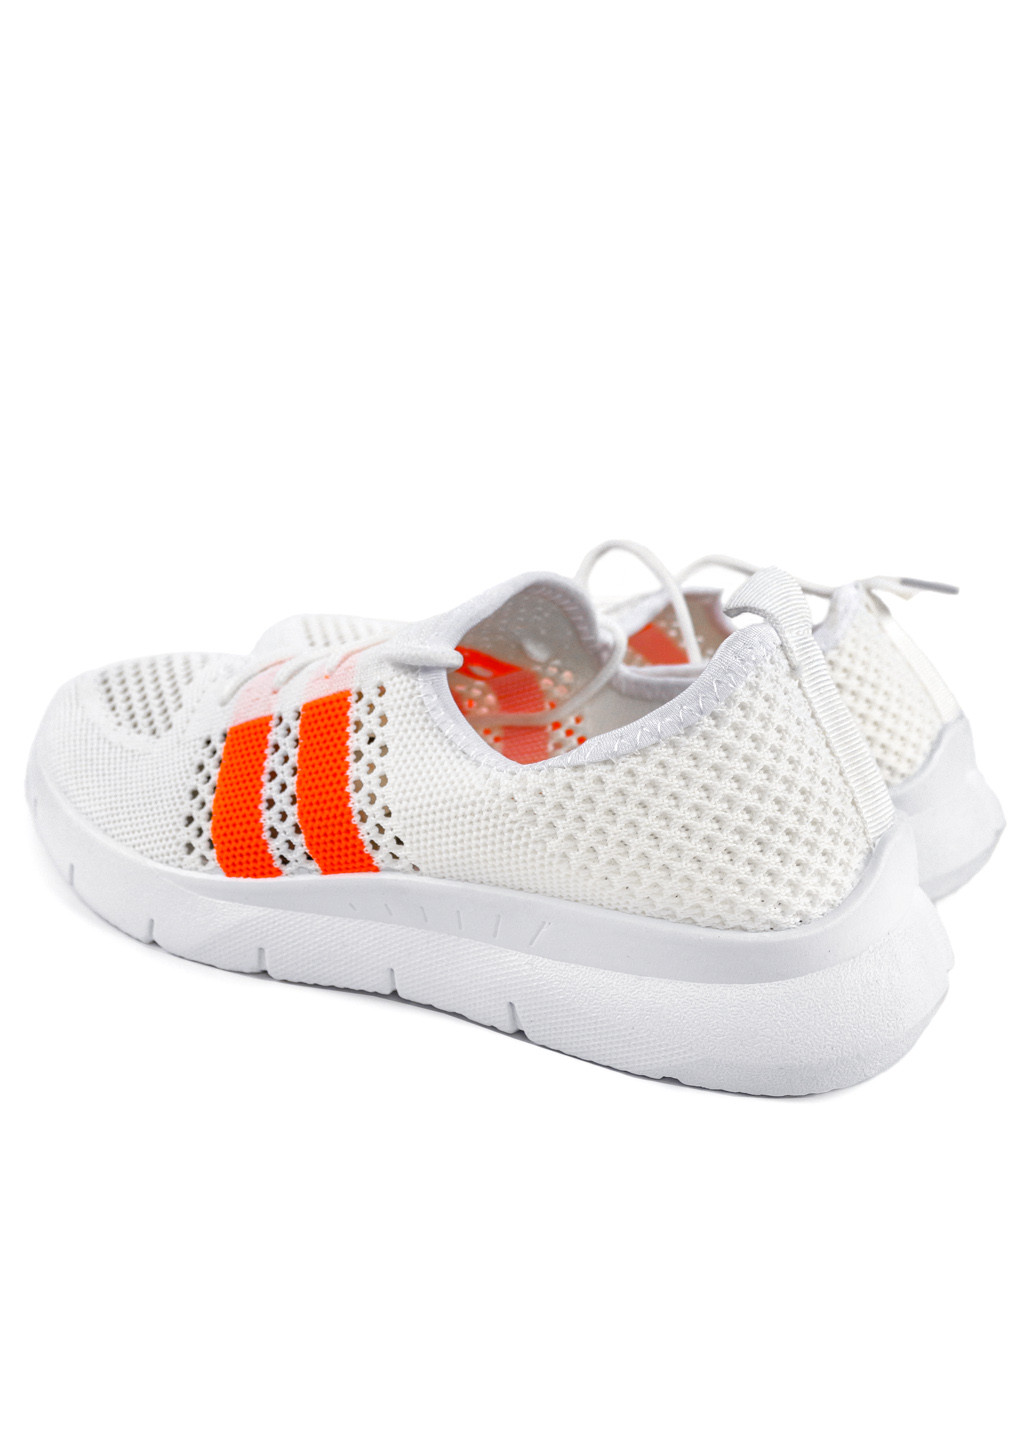 Белые демисезонные кроссовки женские летние из текстиля кремово-оранжевые 1351080902 Gipanis